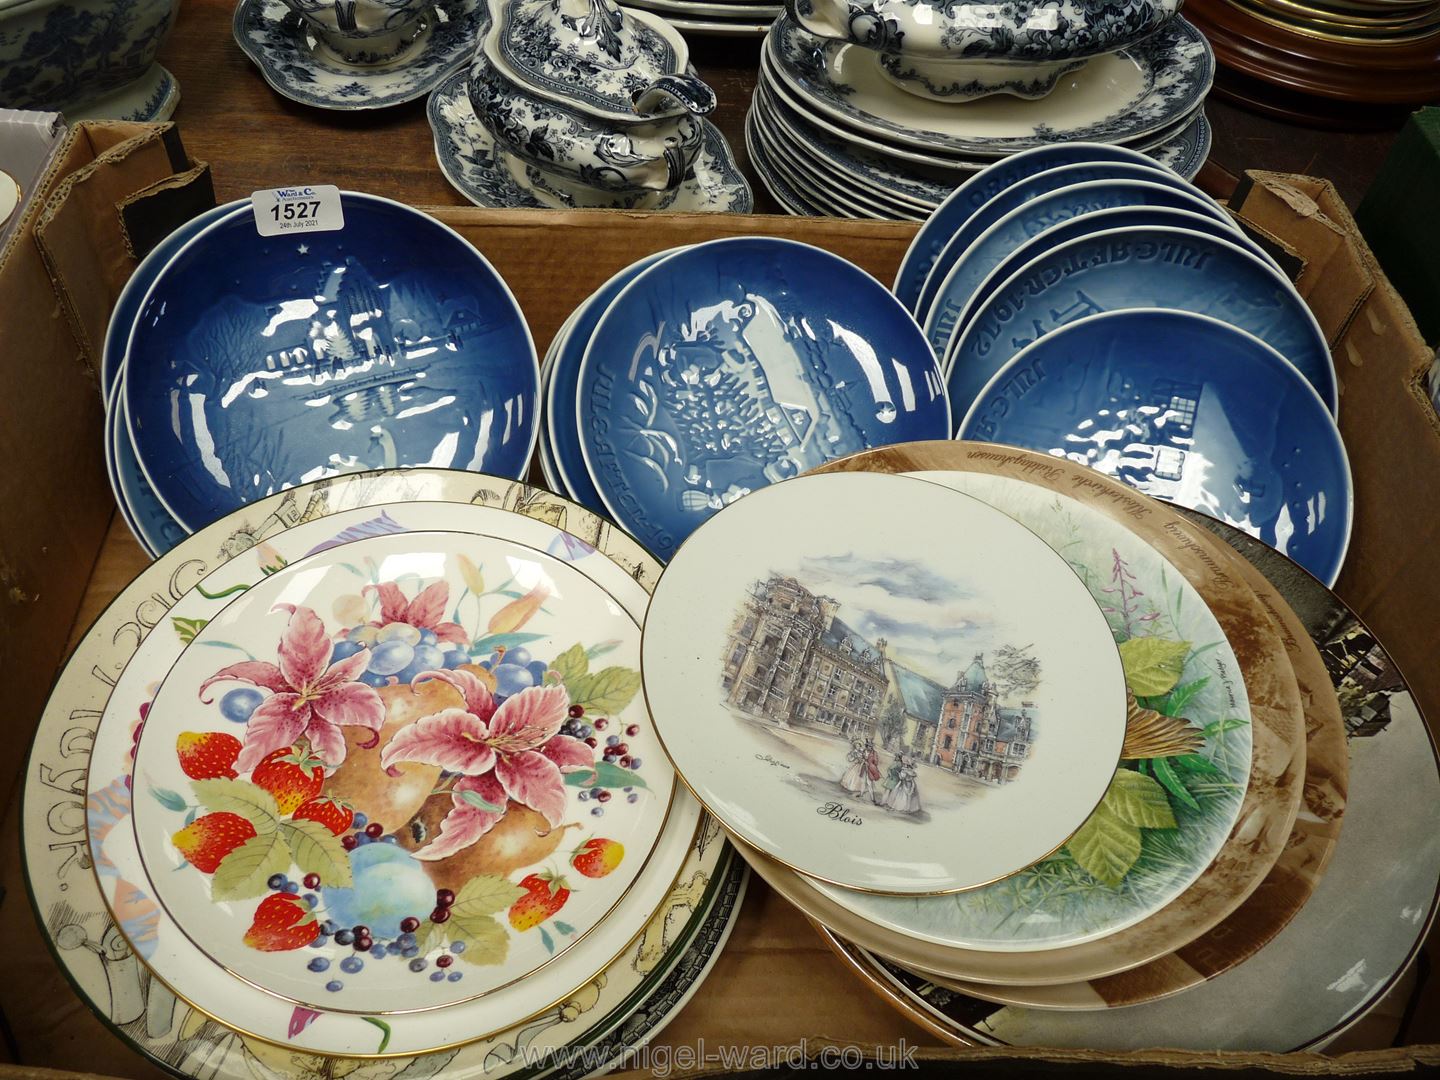 A quantity of display plates including Royal Doulton, Spode, Copenhagen Christmas plates etc.